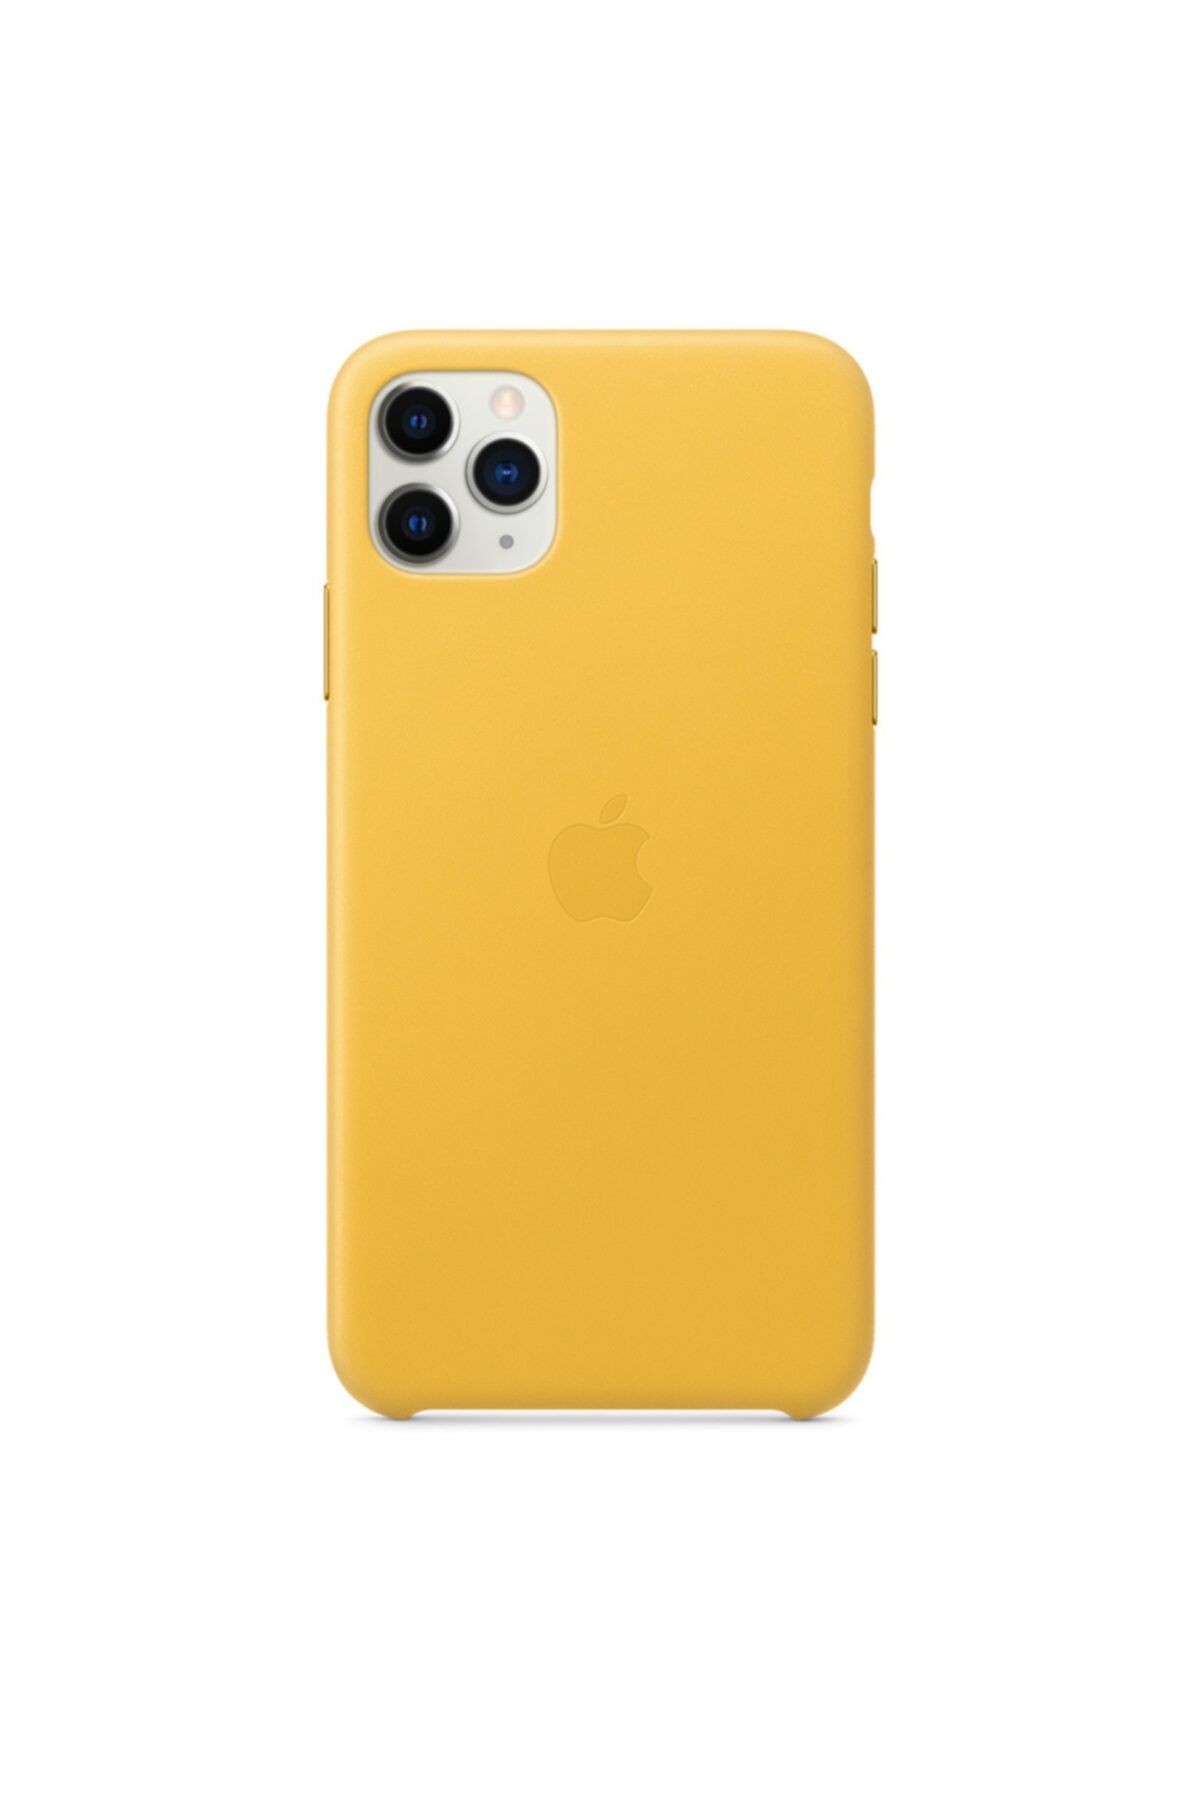 Apple Iphone 11 Pro Max Deri Kılıf Mayer Limon - Mx0a2zm/a